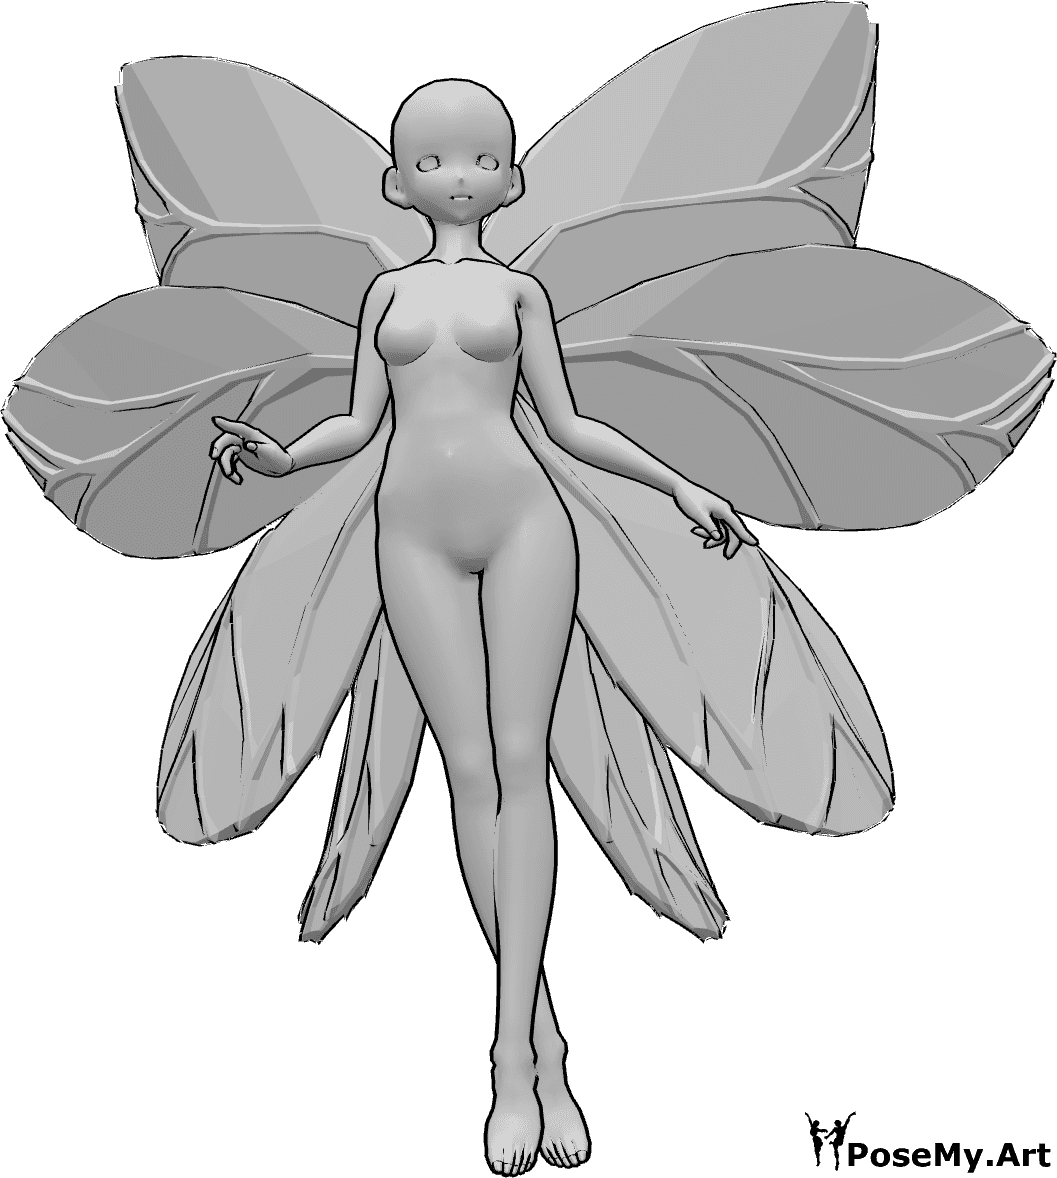 Referencia de poses- Anime hada volando pose - Anime femenino con alas de hada está volando, mirando hacia adelante, sus piernas están cruzadas